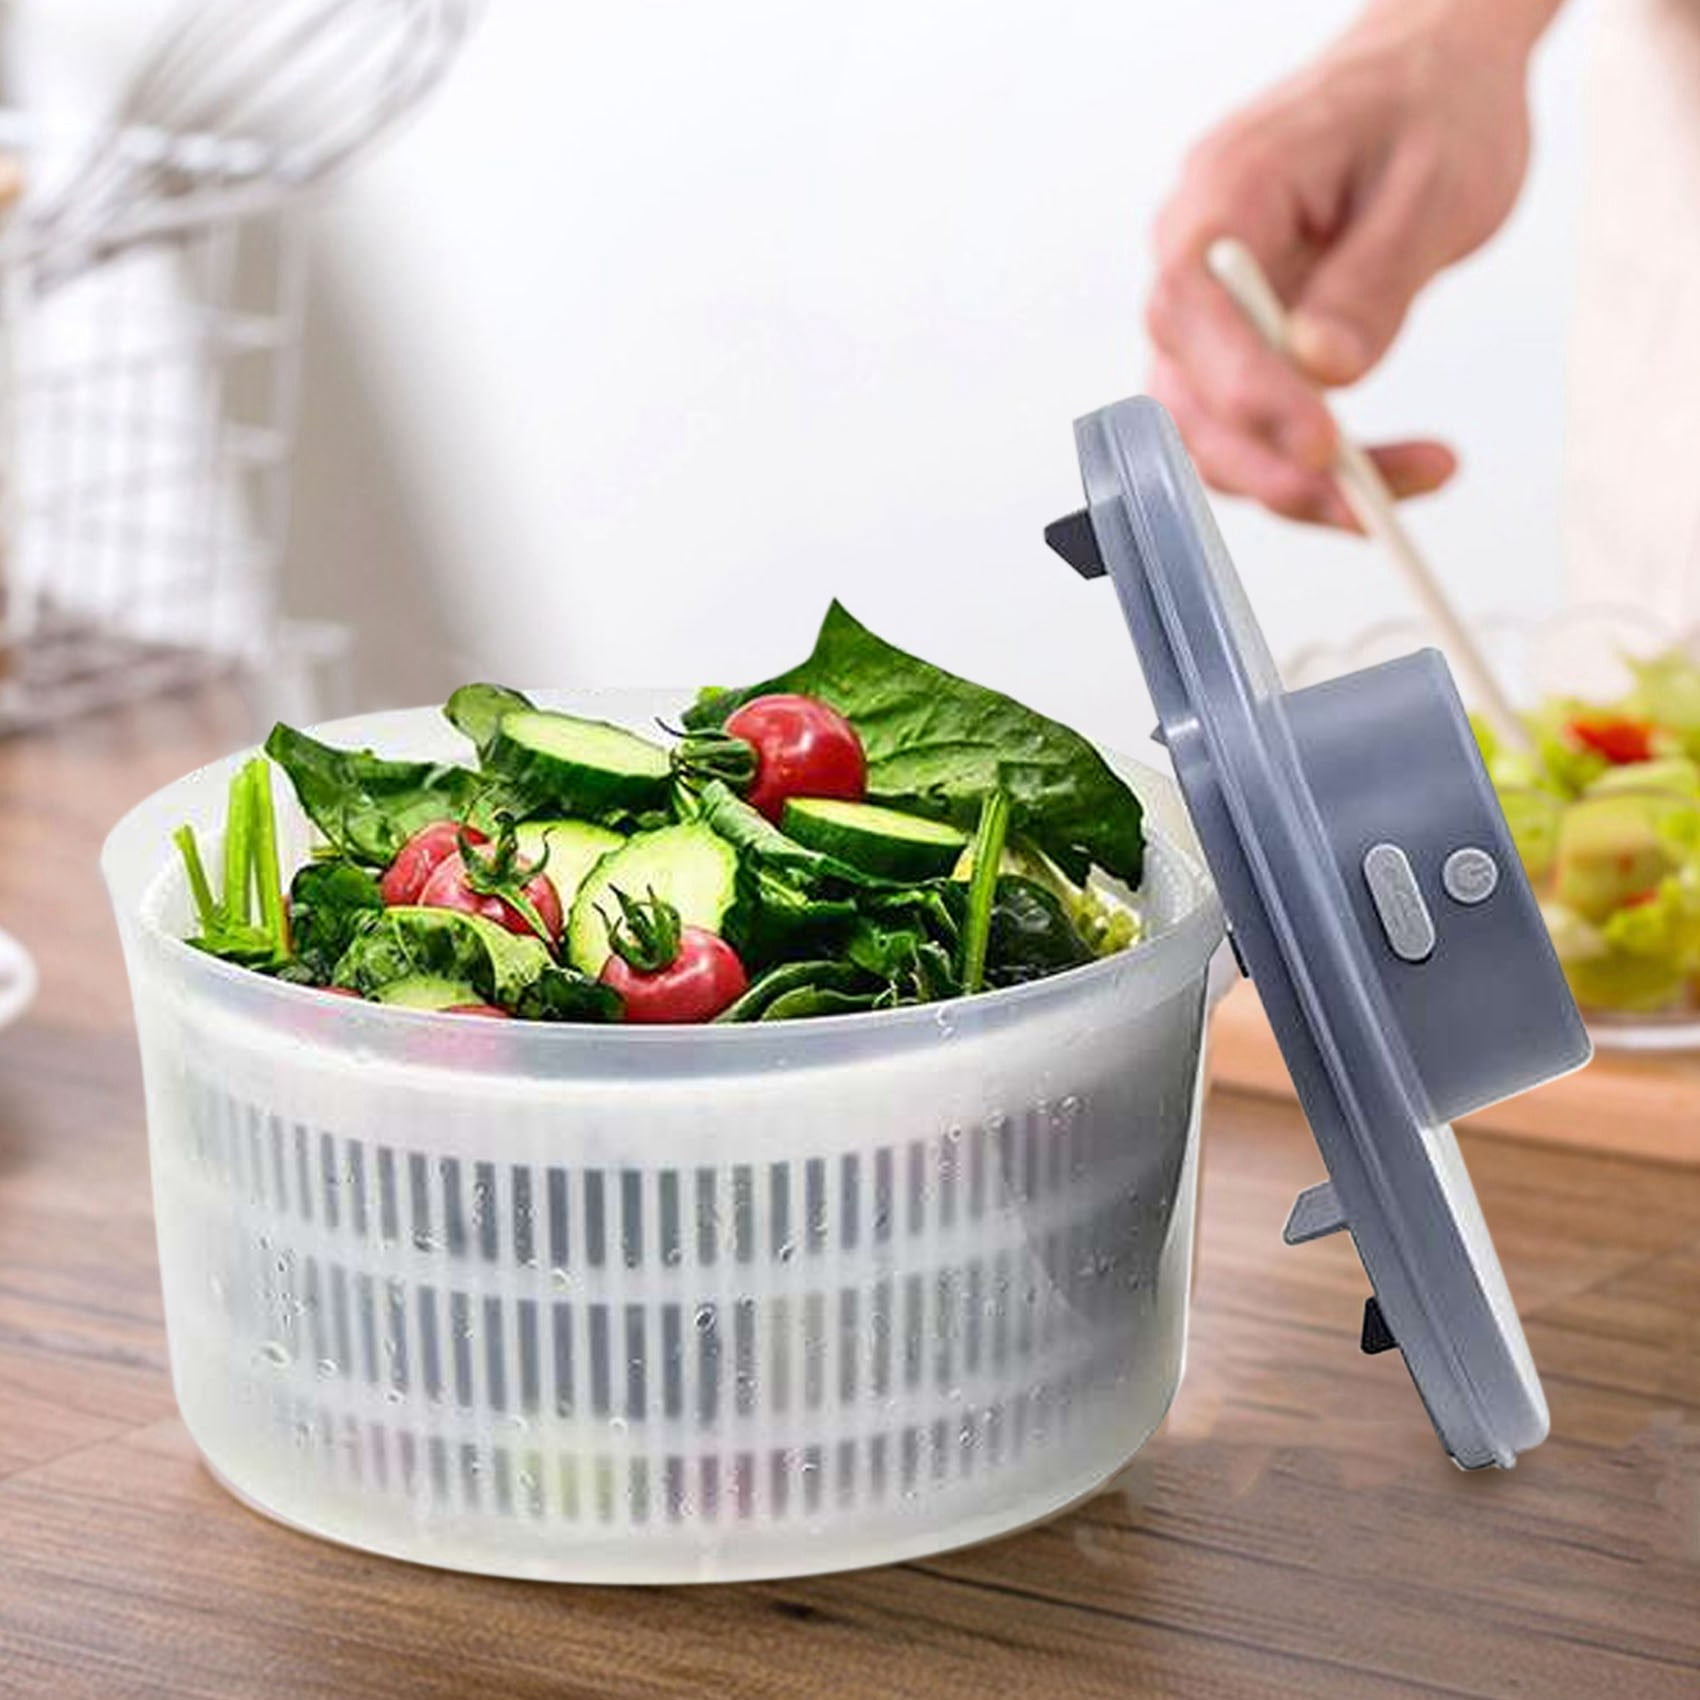 Electric Salad Spinner 4.2-Quart Lettuce spinner,Fruit cleaner spinner  Vegetable Dryer,Fruit Washer with Bowl and Colander,Salad Dryer Mixer for